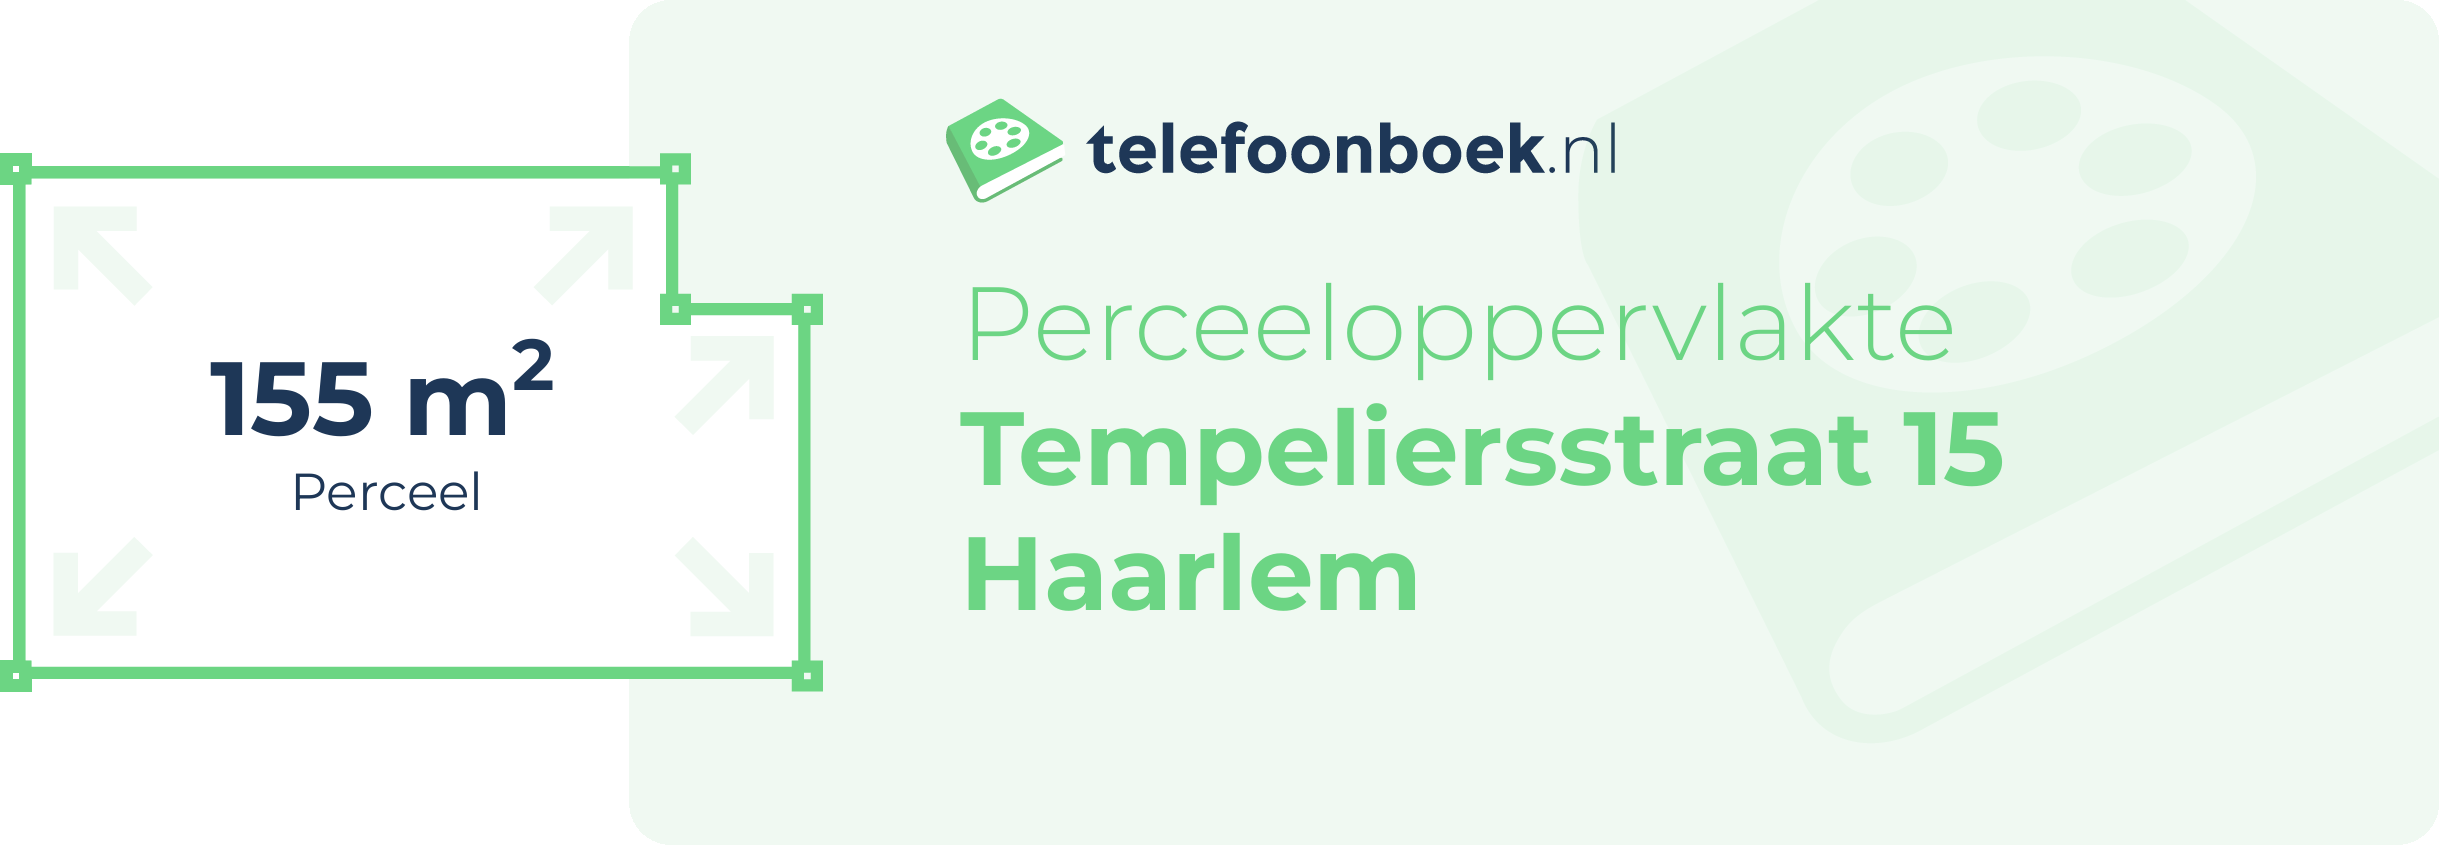 Perceeloppervlakte Tempeliersstraat 15 Haarlem